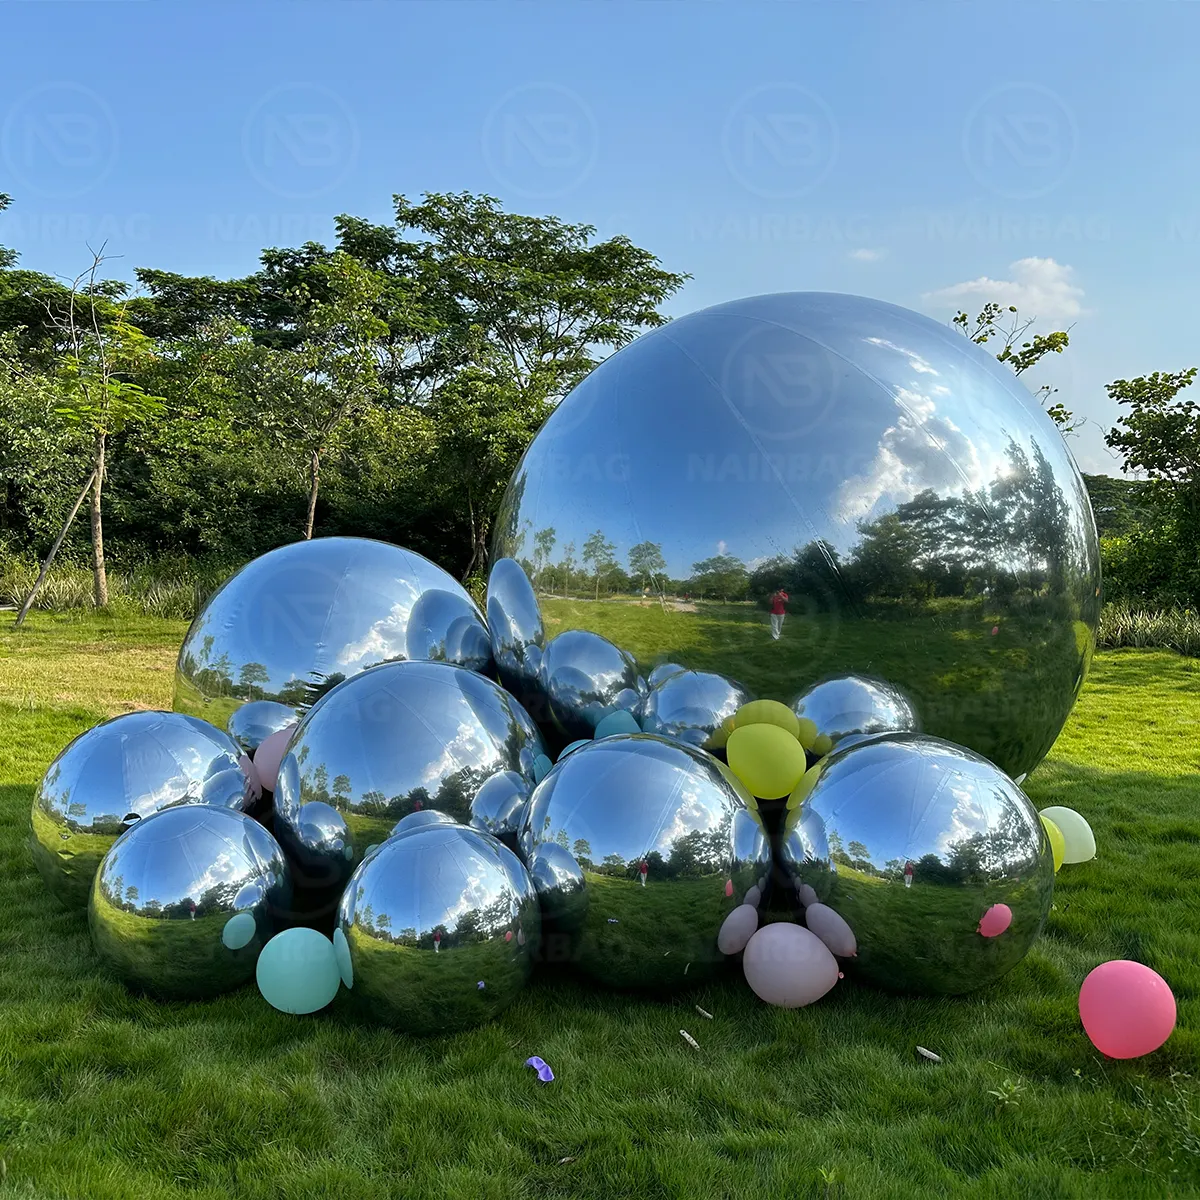 Серебряный зеркальный шар надувные большие блестящие шары Гигантские Воздушные шары диско-вечеринки рождественские события Декор отражающие большие зеркальные сферы из ПВХ